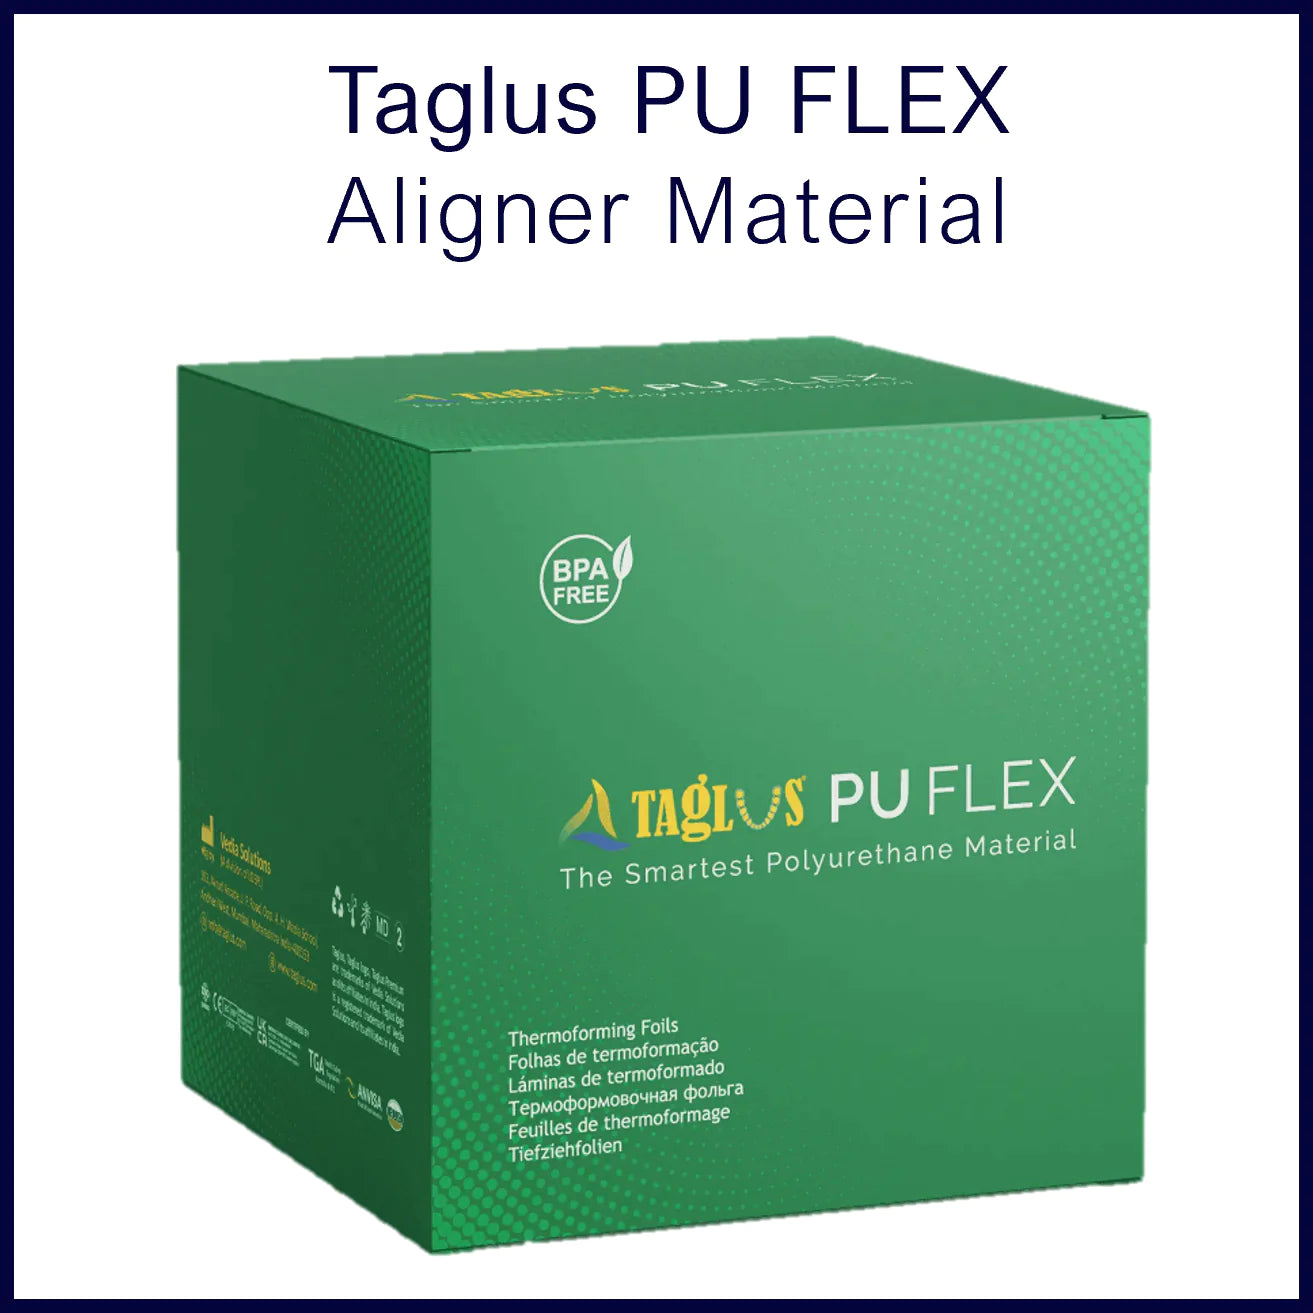 PU FLEX Aligner Material